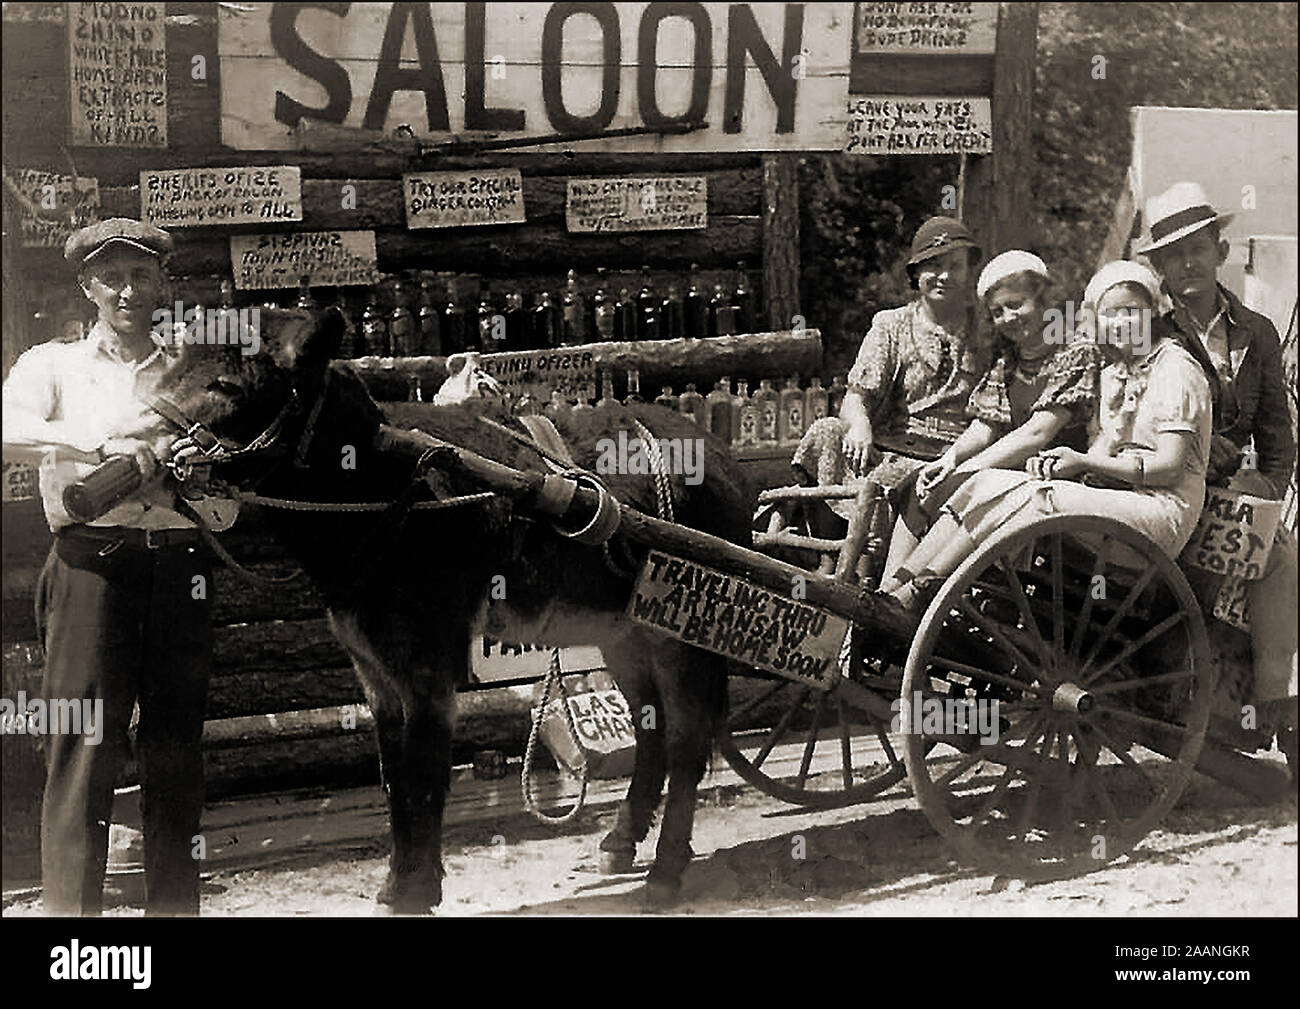 Verbot/TEETOTALISM/FRONT/ABSTINENZ - ein Urlaub Ausflug in den USA Alkohol von einem Moonshine (illegalen Alkohol) Limousine in Arkansas, USA. c 1920er zu kaufen Stockfoto